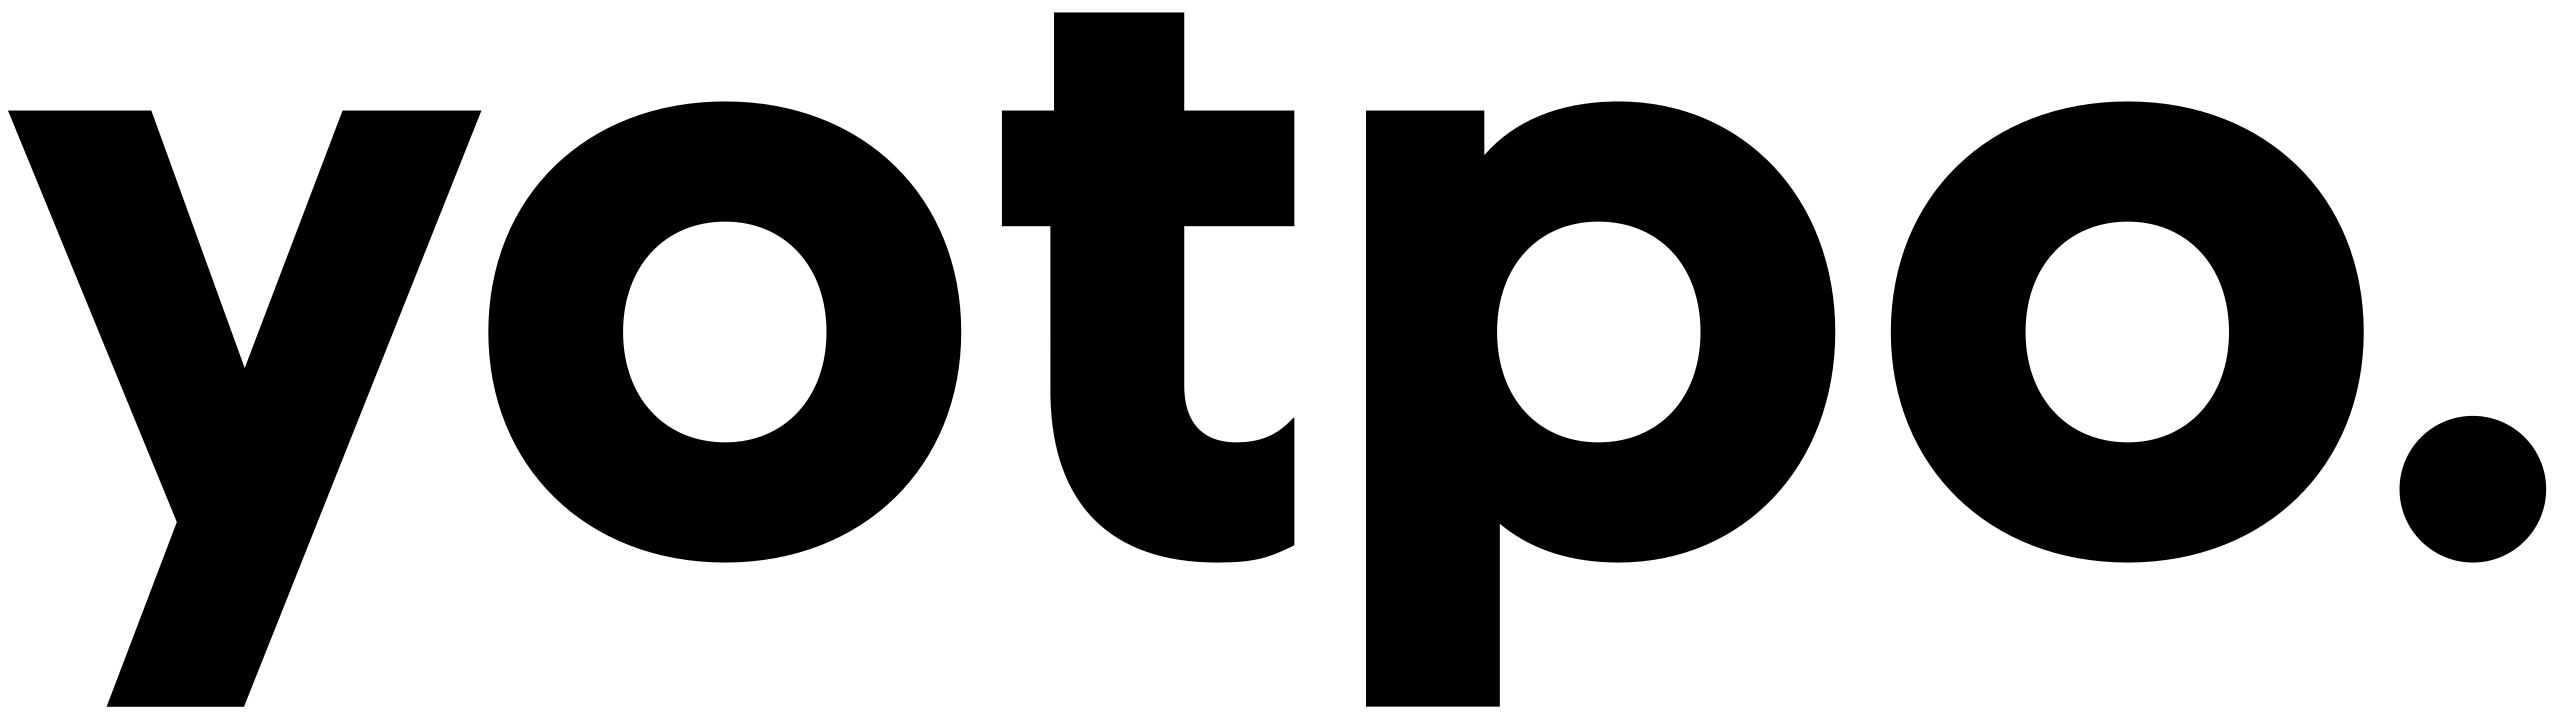 Yotpo partner